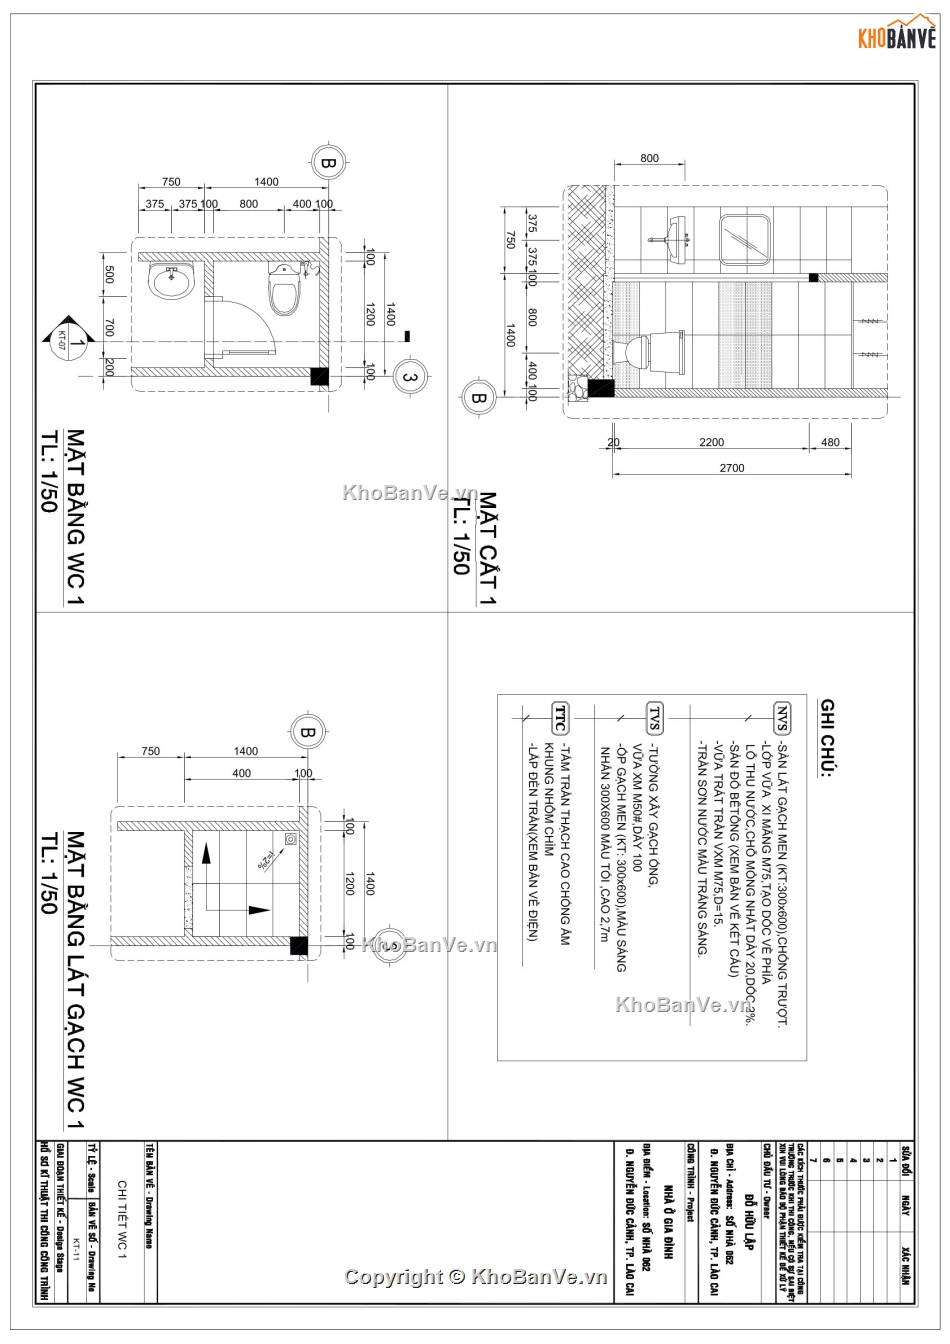 Hồ sơ thiết kế nhà gác lửng kích thước 5x15.5m